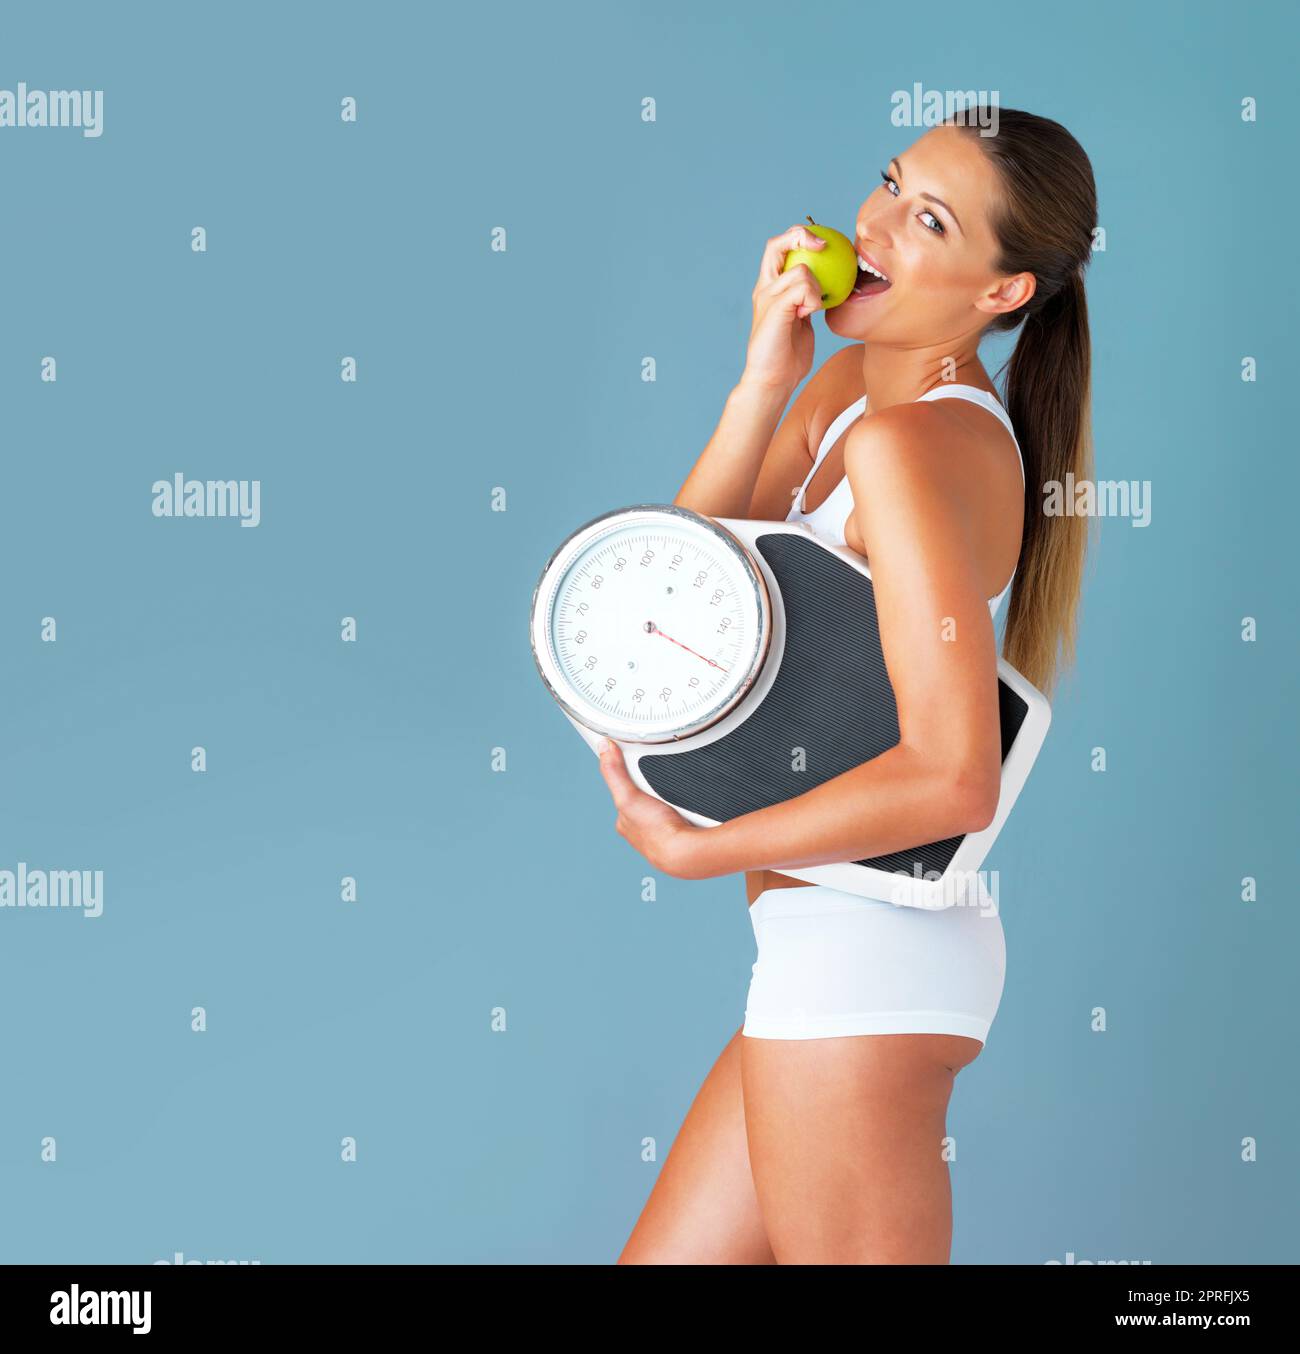 Non è il momento migliore per iniziare a vivere in buona salute. Studio shot di una giovane donna in forma che mangia una mela e tiene una scala su uno sfondo blu. Foto Stock